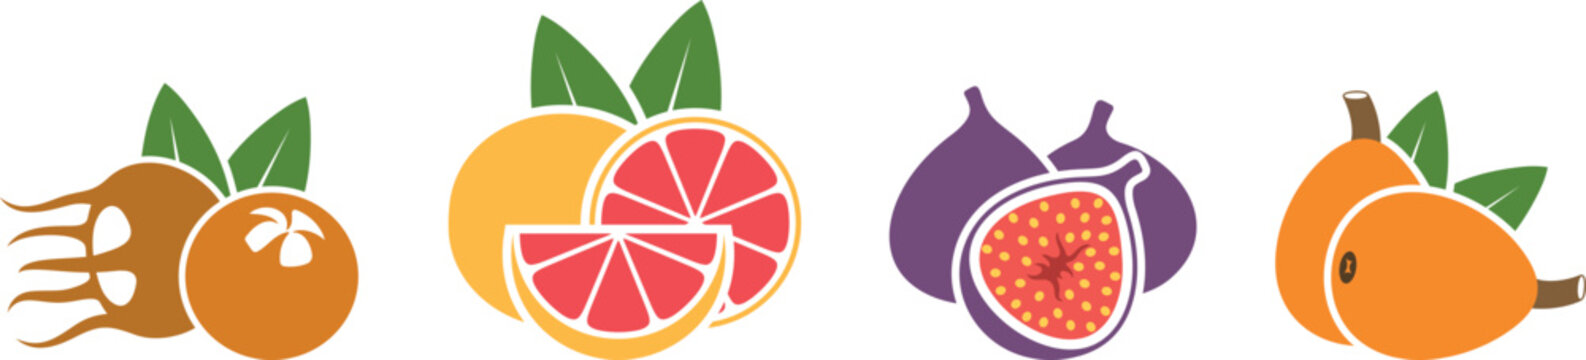 Fruit logo. Isolated fruit on white background